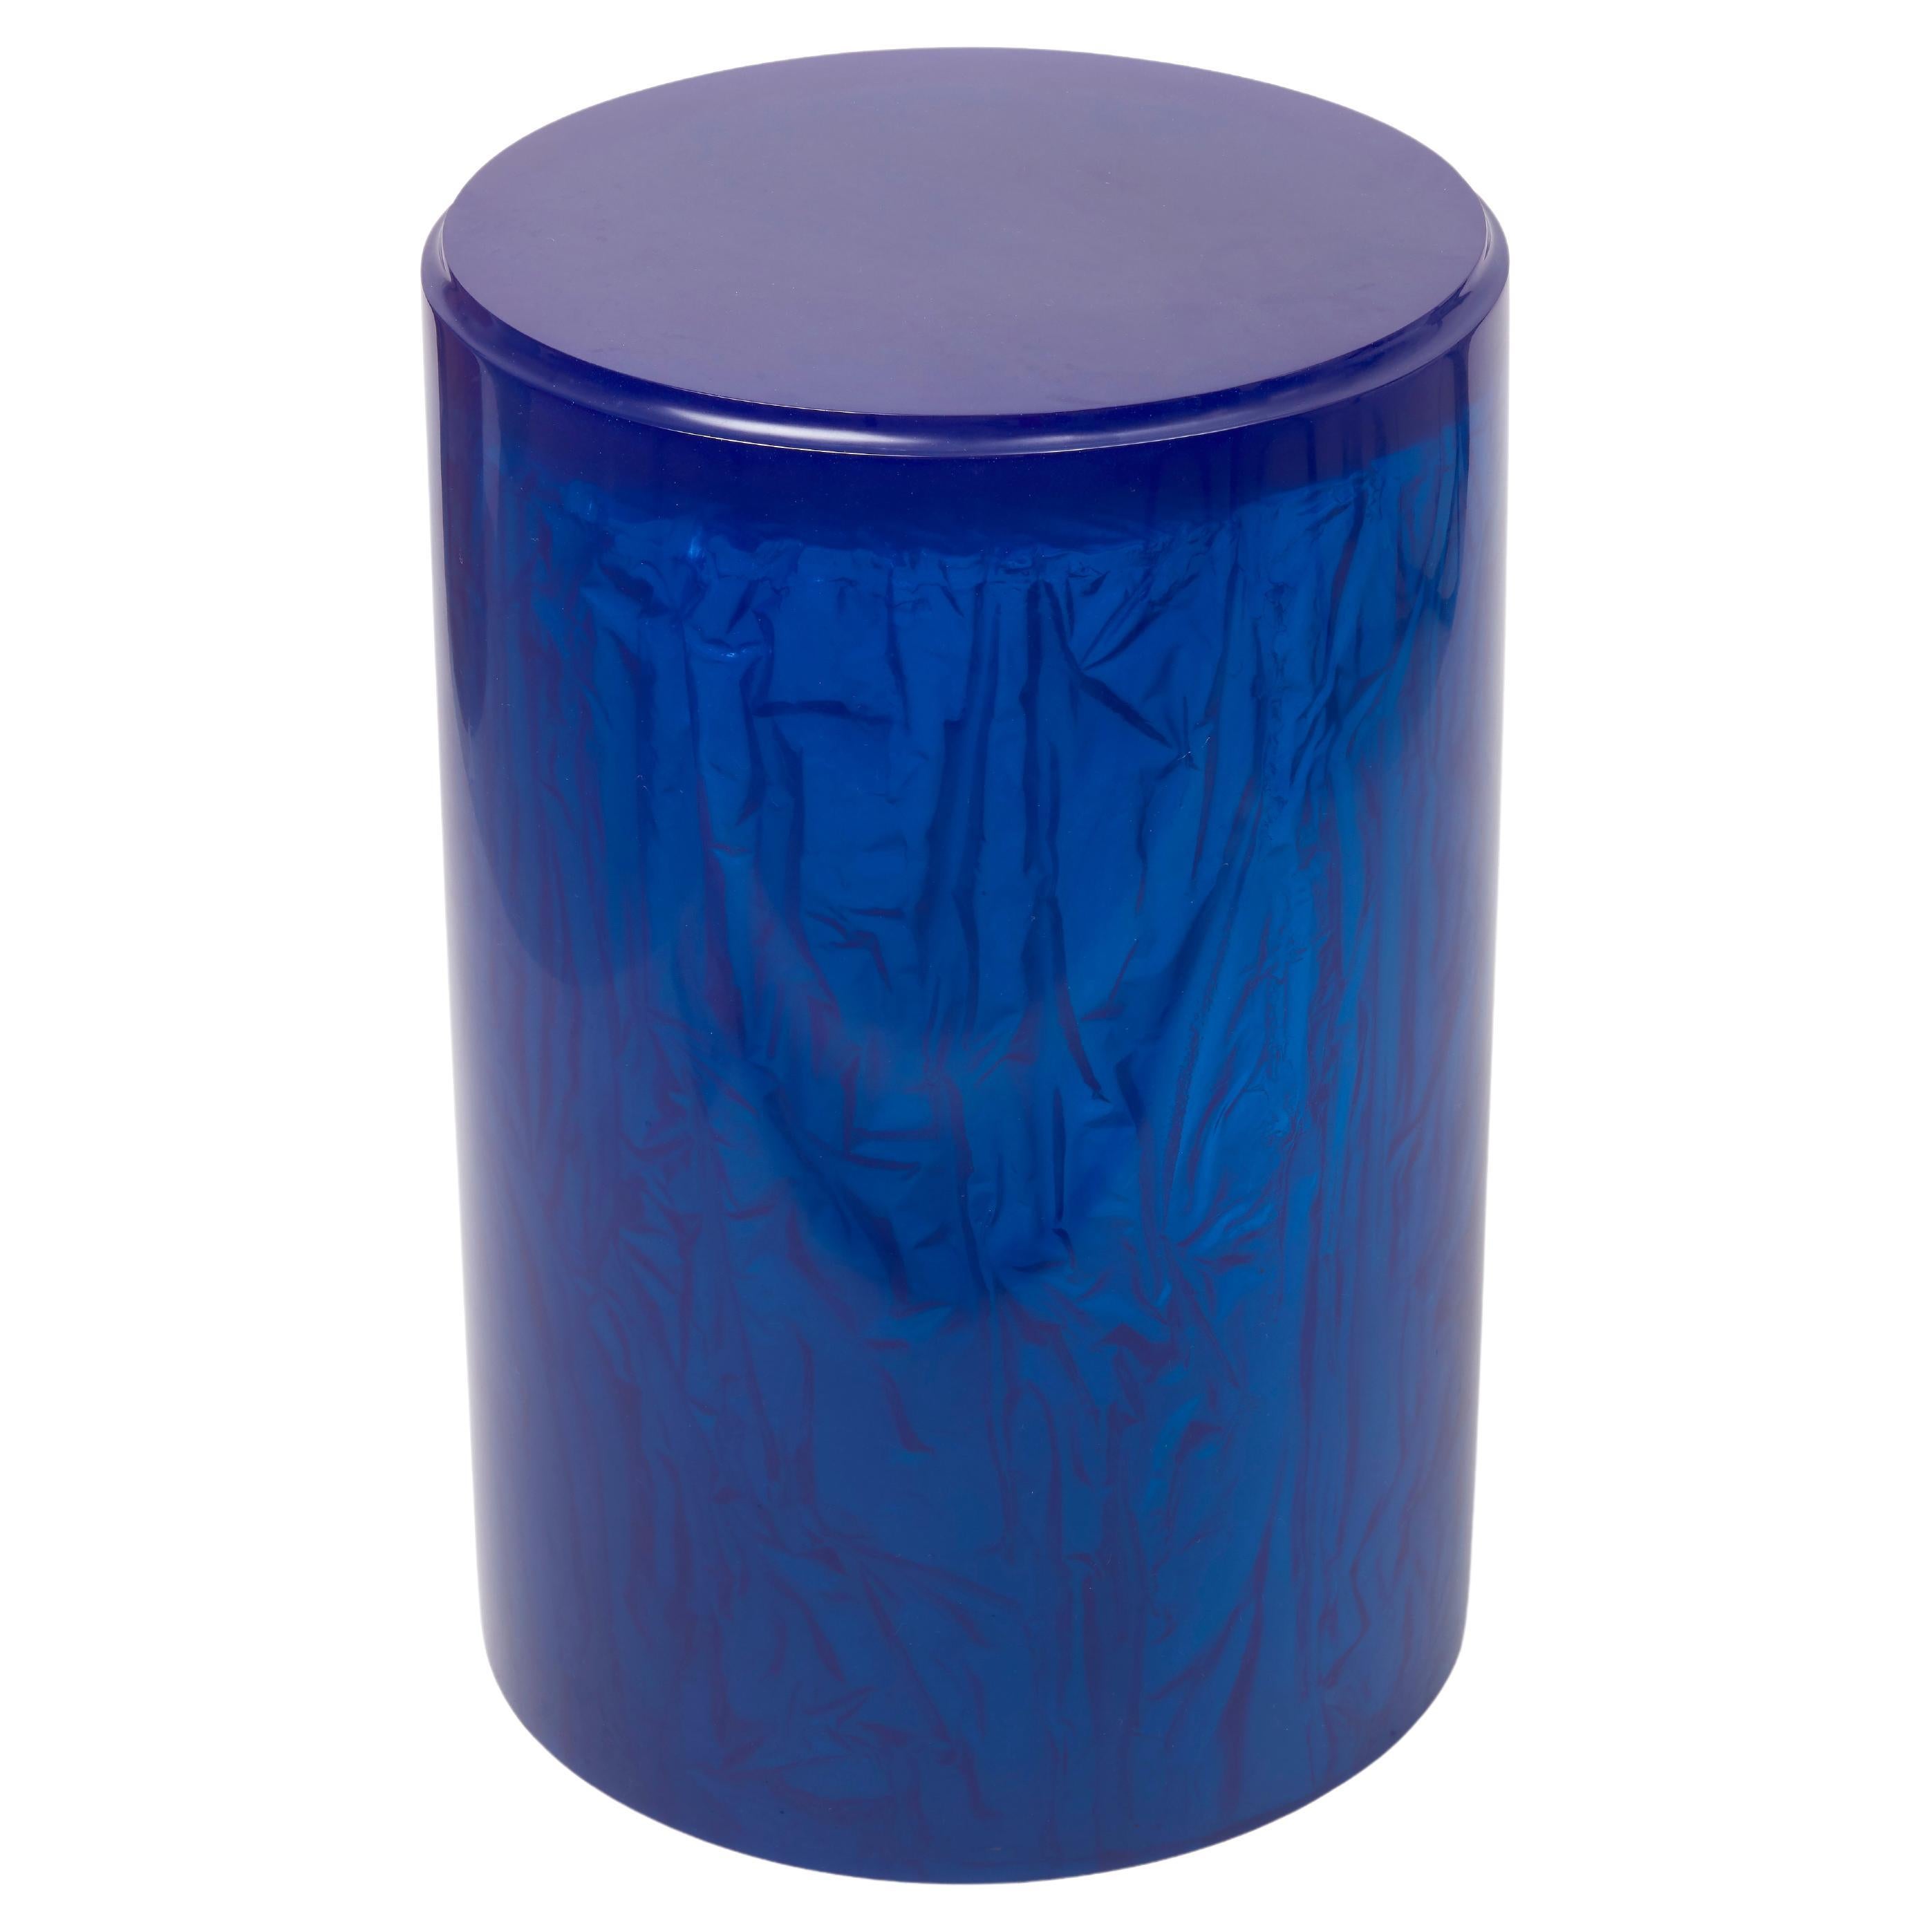 Table d'appoint ou tabouret contemporain en résine acrylique par Natalie Tredgett, bleu cobalt